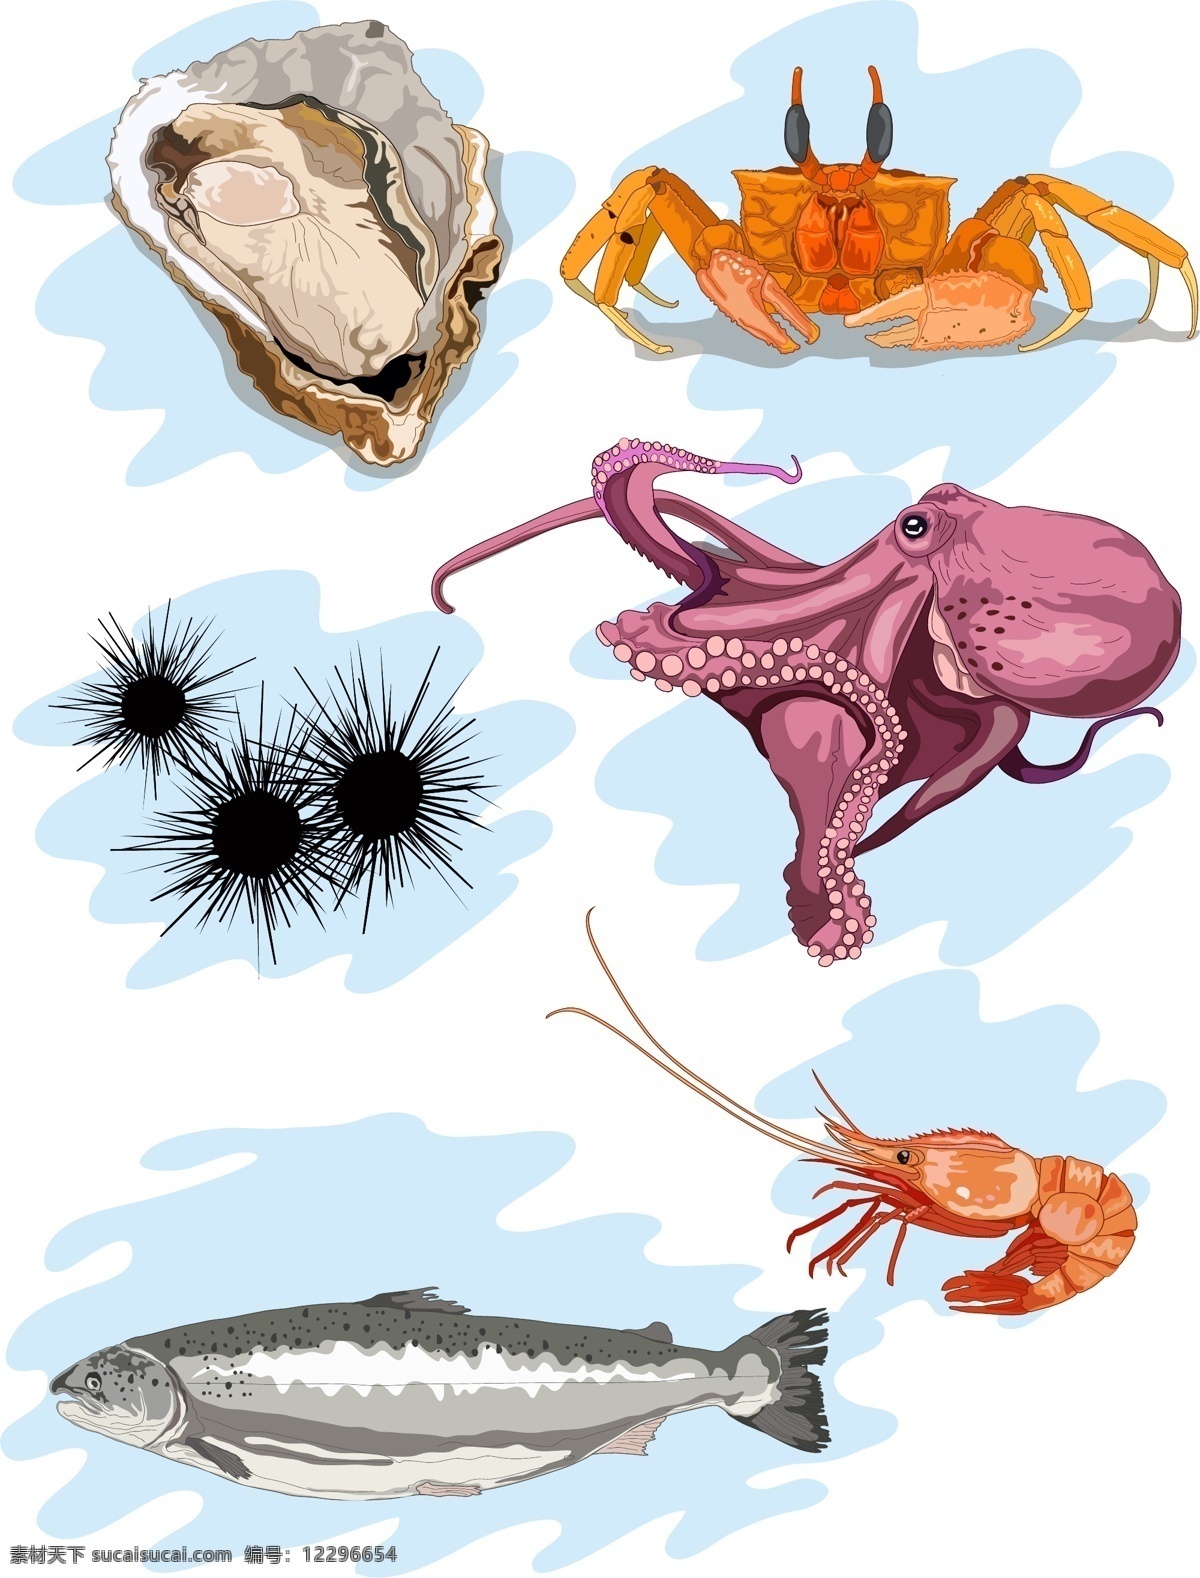 手绘 风格 海鲜 套 图 牡蛎 螃蟹 章鱼 海胆 大虾 三文鱼 海洋 动物 套图 插画 装饰图案